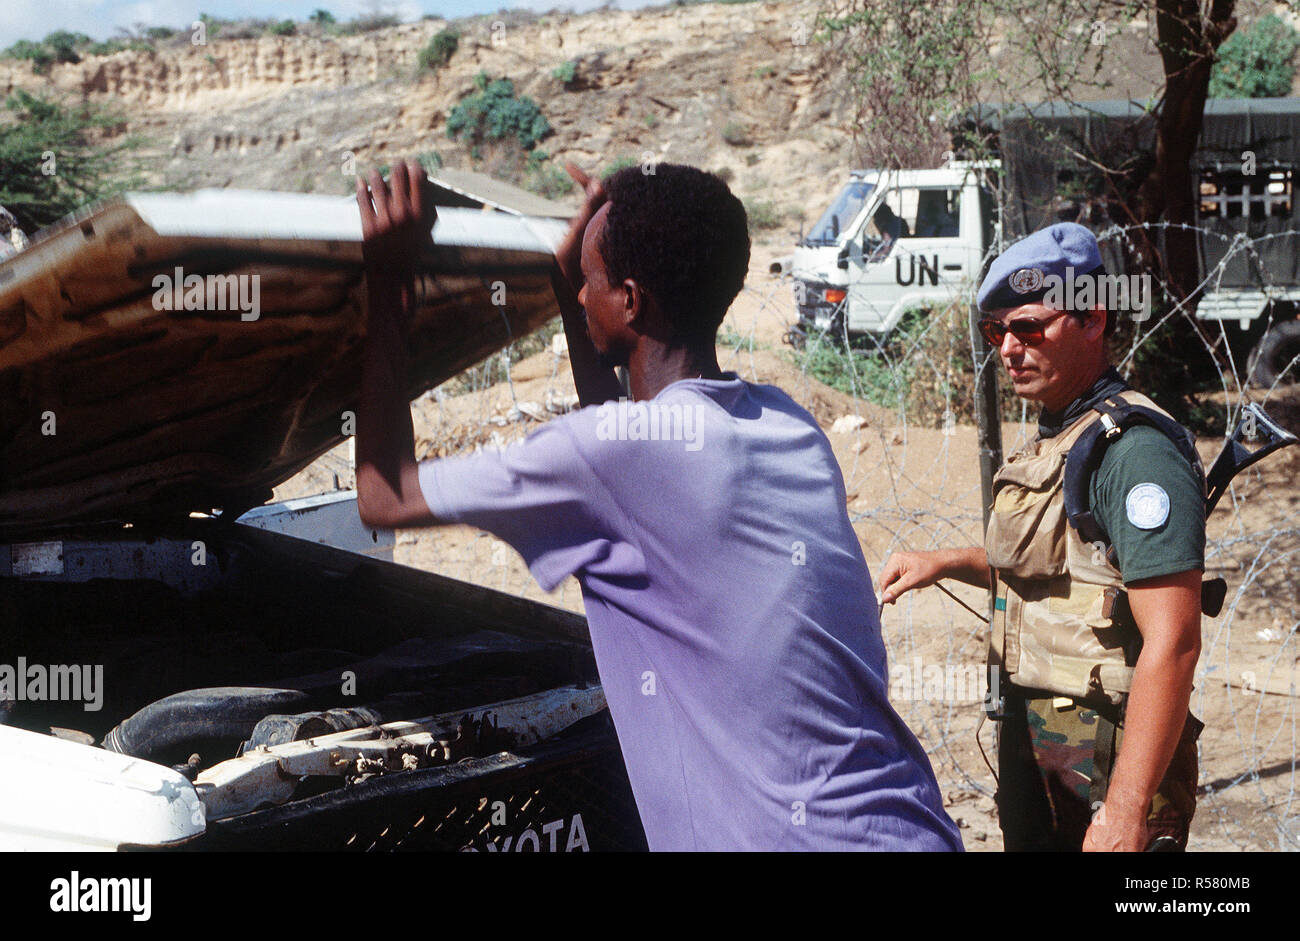 Un soldat Belge effectue un contrôle de sécurité sur un véhicule qui tentent d'entrer dans l'enceinte à Kismayo. Le contingent belge fait partie des forces des Nations Unies en Somalie dans le cadre de l'opération continuent d'espoir. Banque D'Images